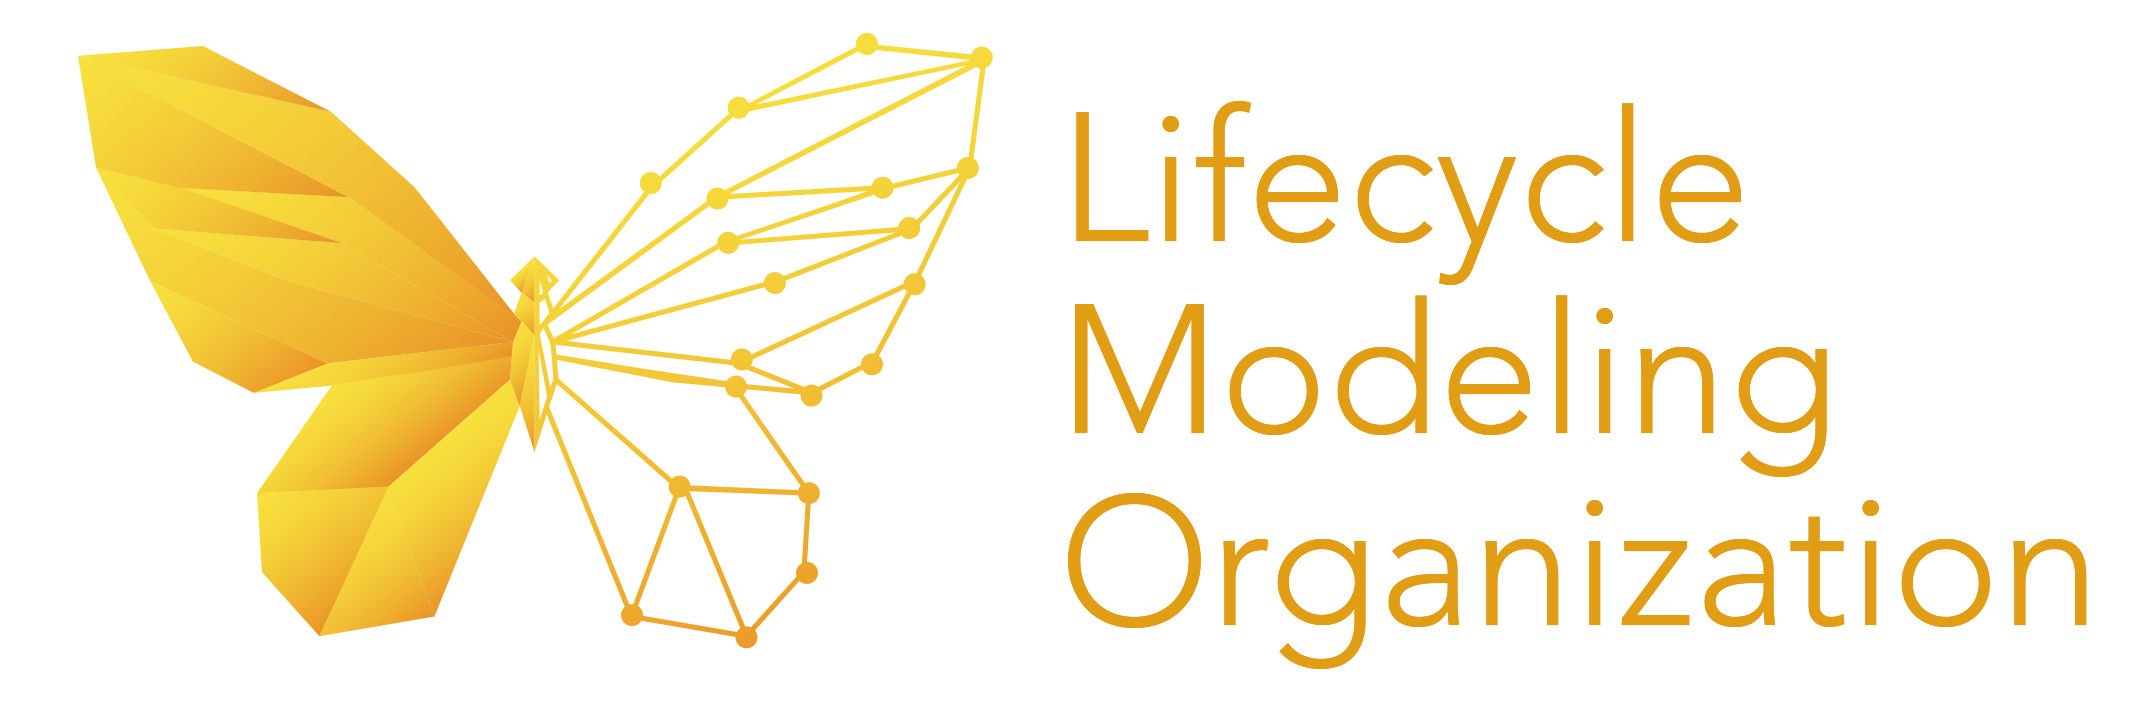 Lifecycle Modeling Organization Logo